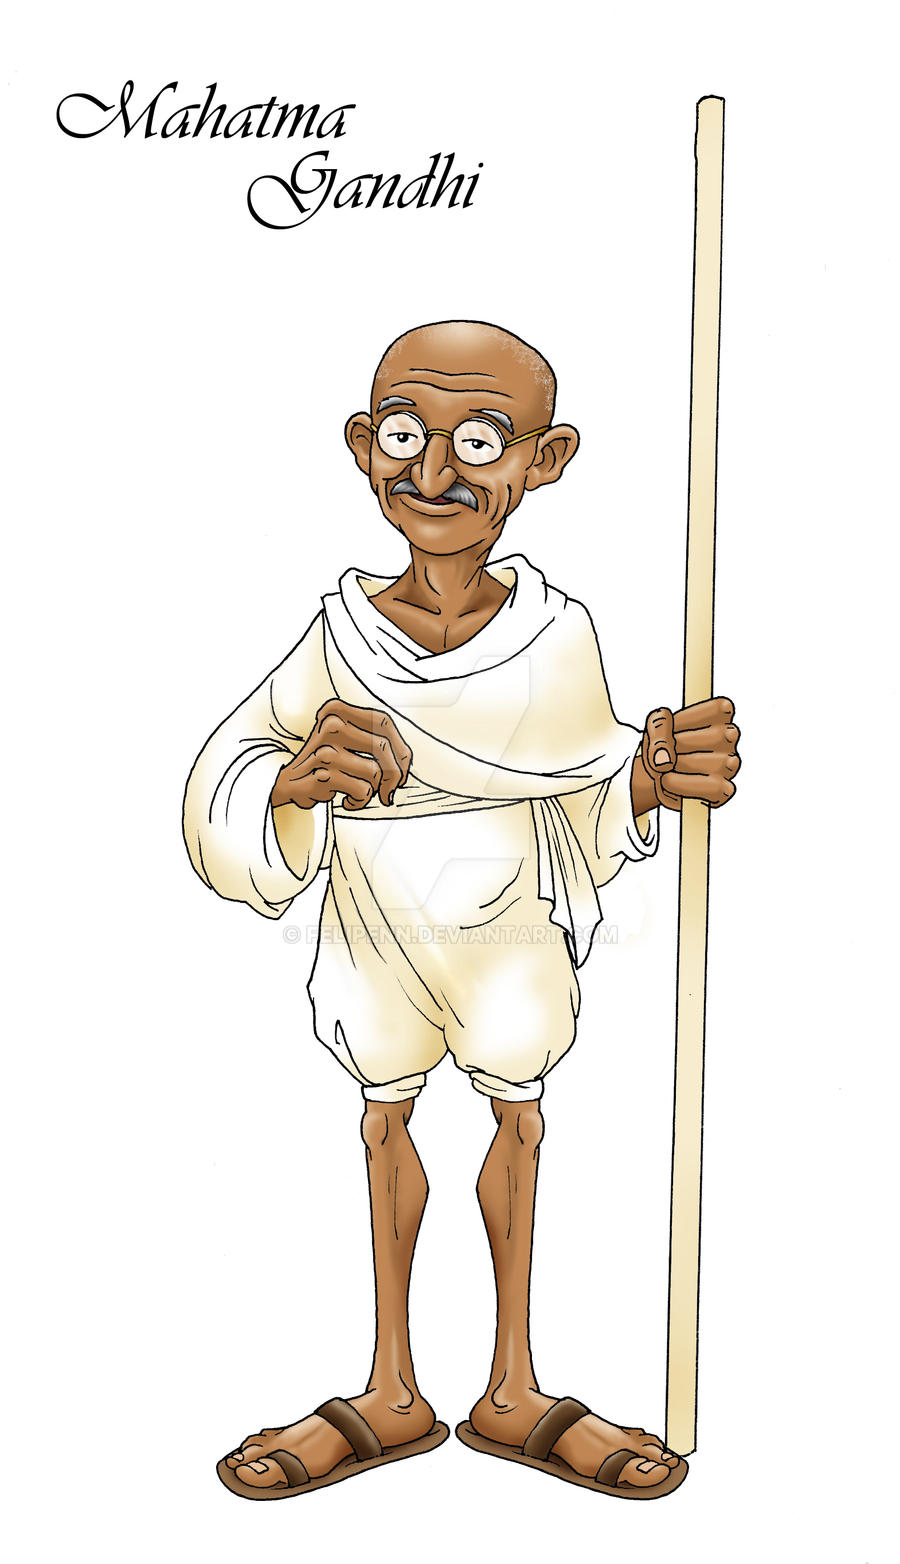 Mahatma Gandhi by Felipenn on DeviantArt